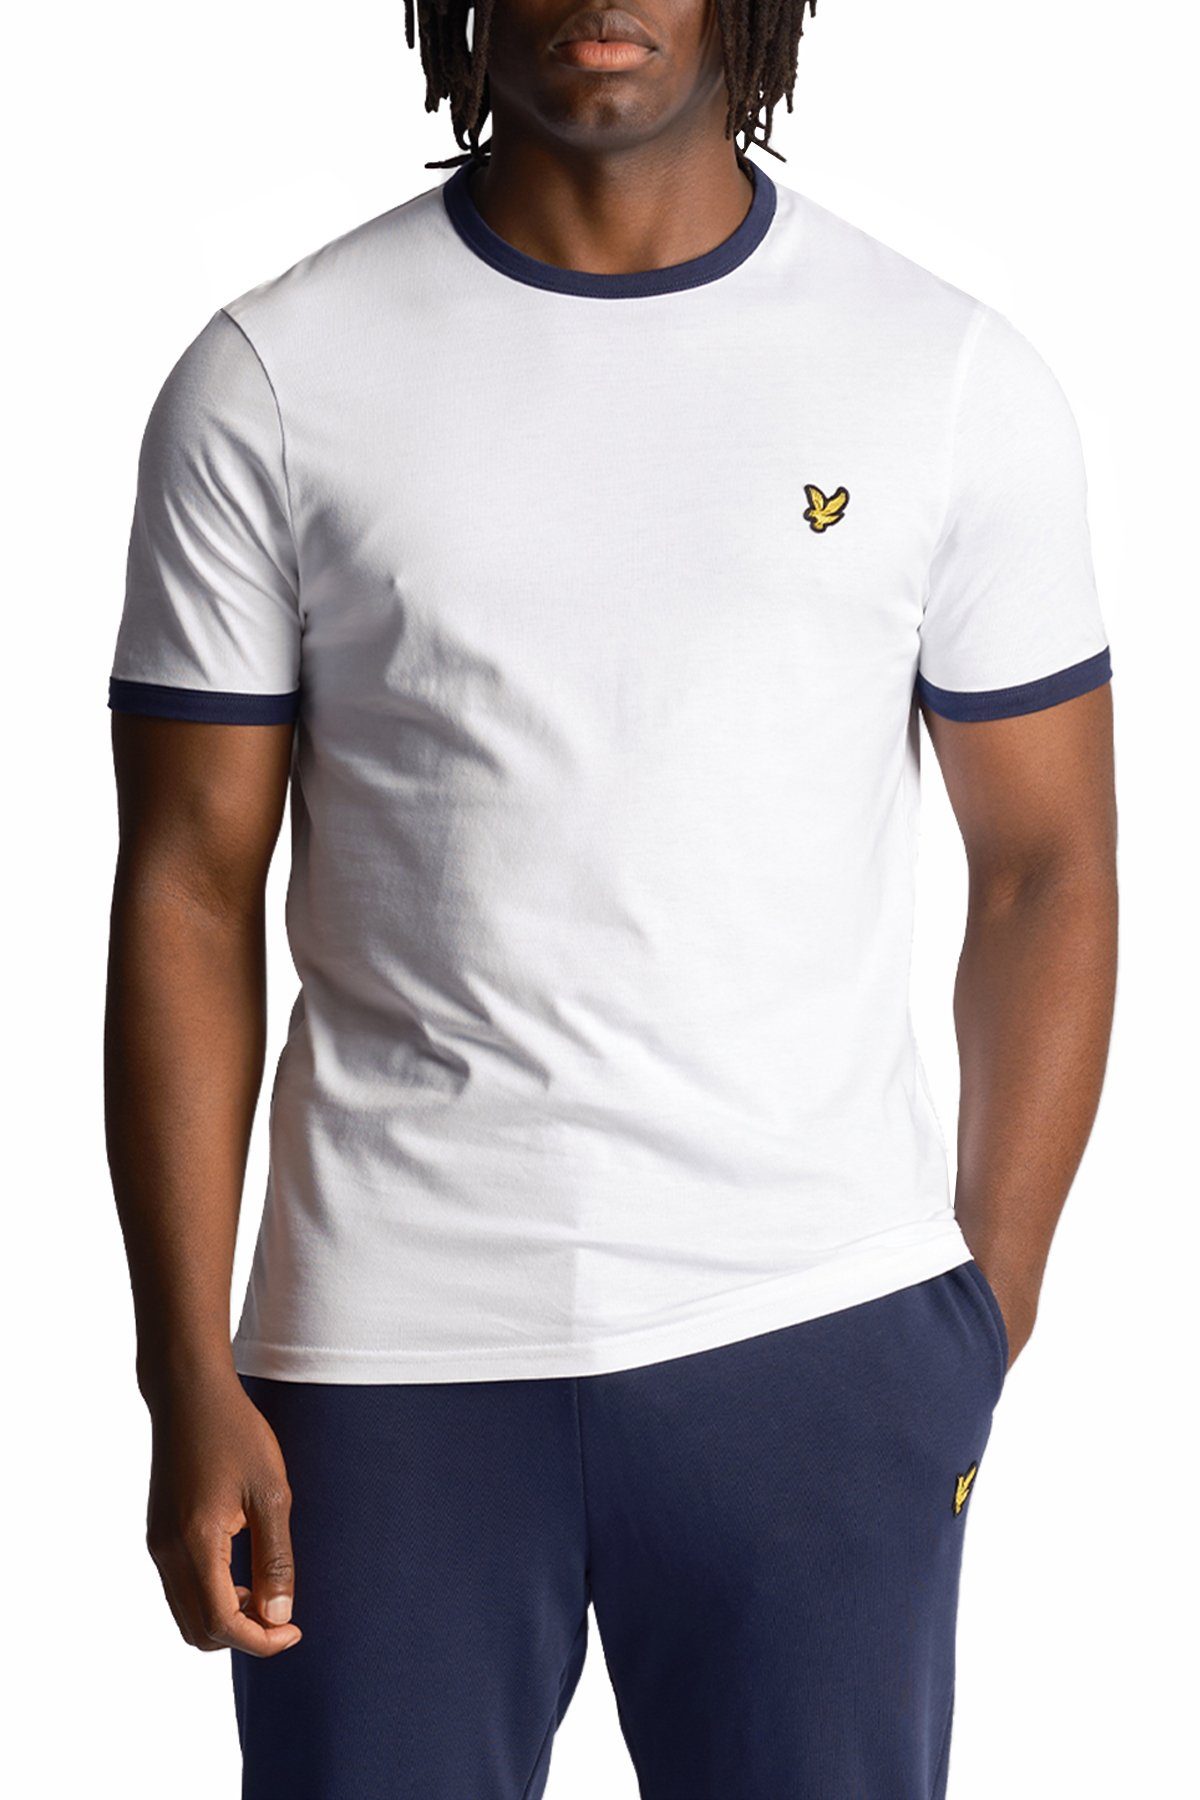 Lyle & Scott T-Shirt Mit Kontrastierender Zierleiste Weiß/Marine | T-Shirts